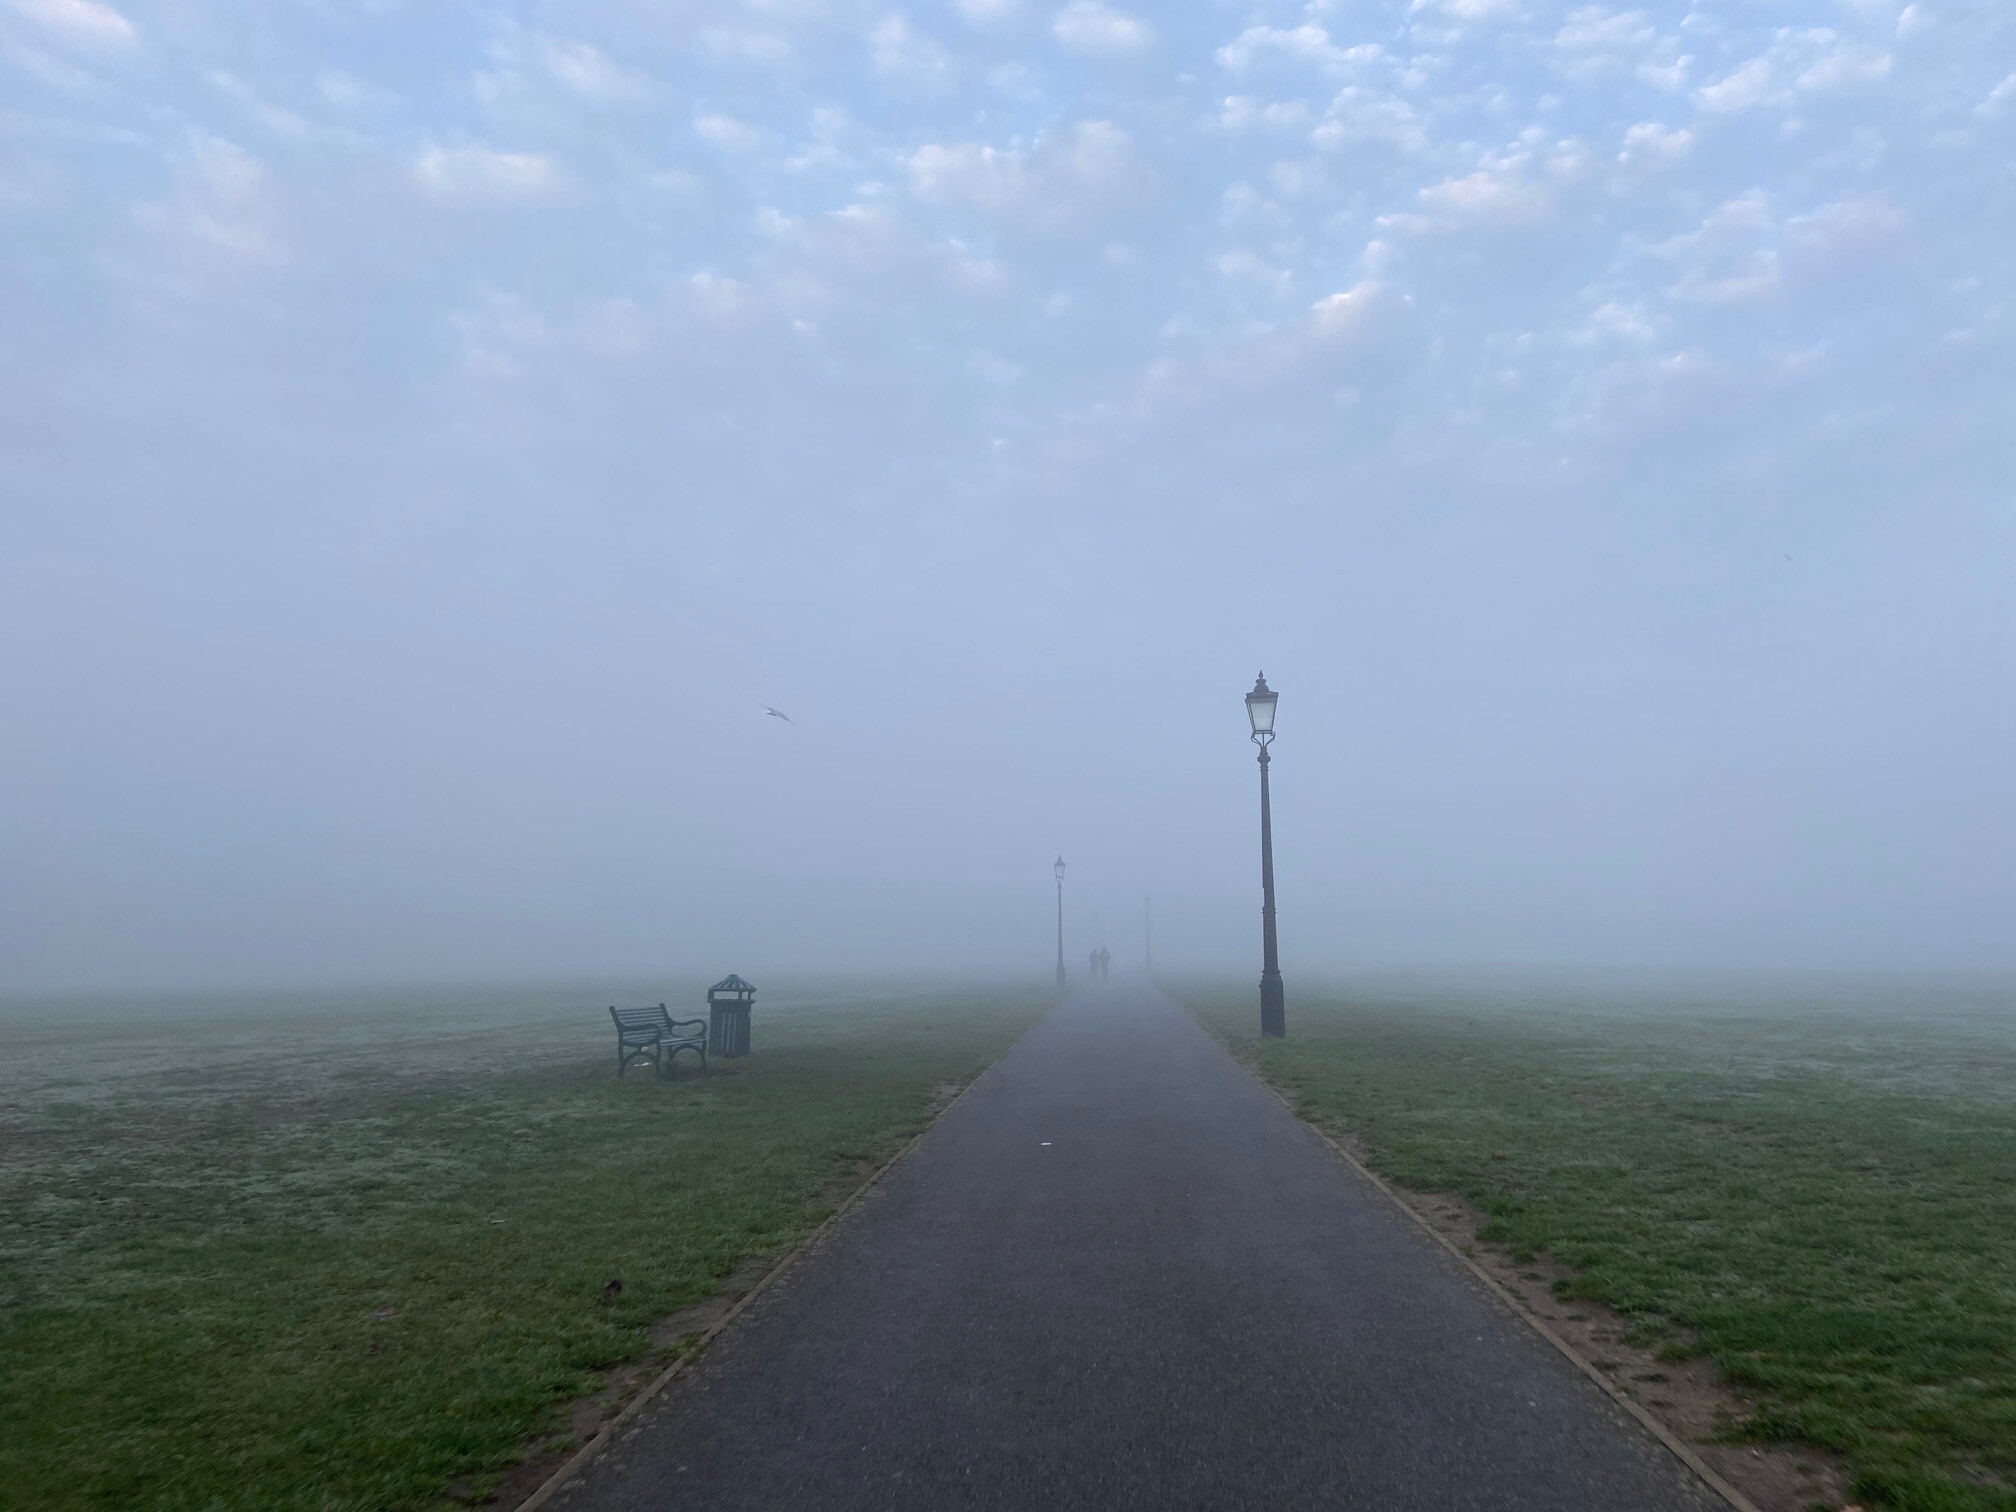 Blackheath fog